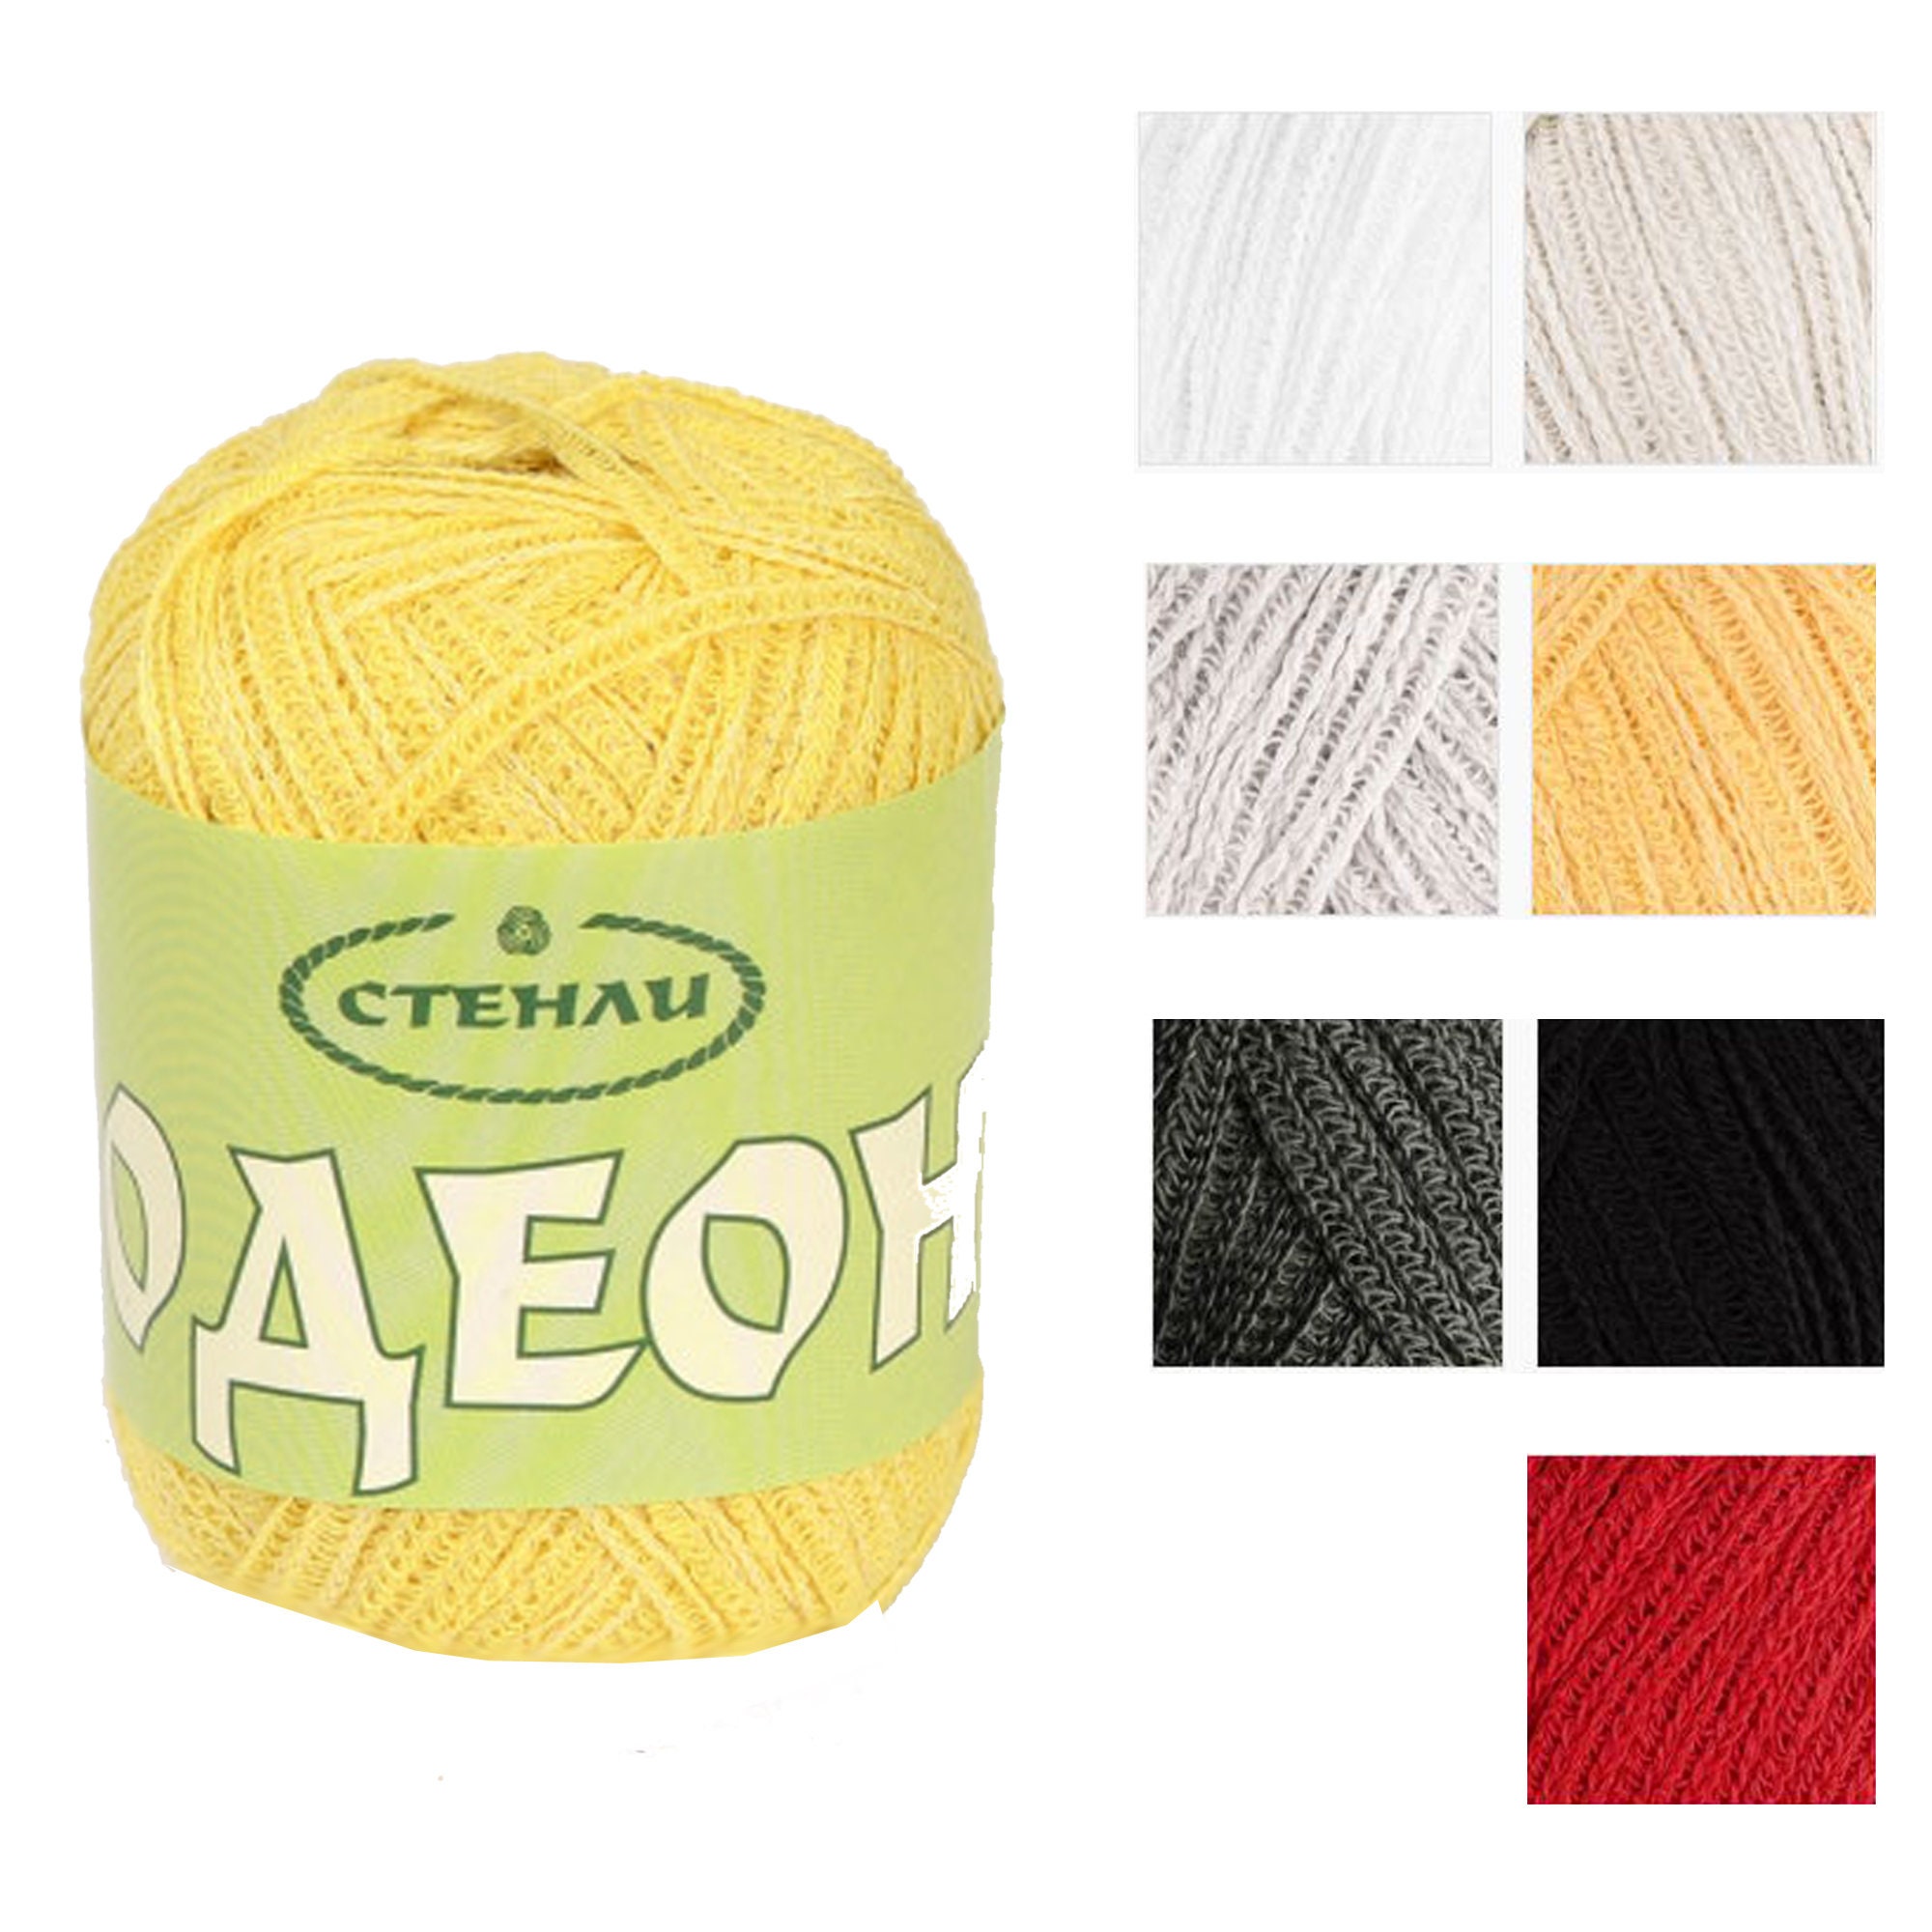 Gold Metallic Yarn, Crocheting Knitting Sparkling Glitter Yarn, Golden  Lurex Brocade Yarn Ball 